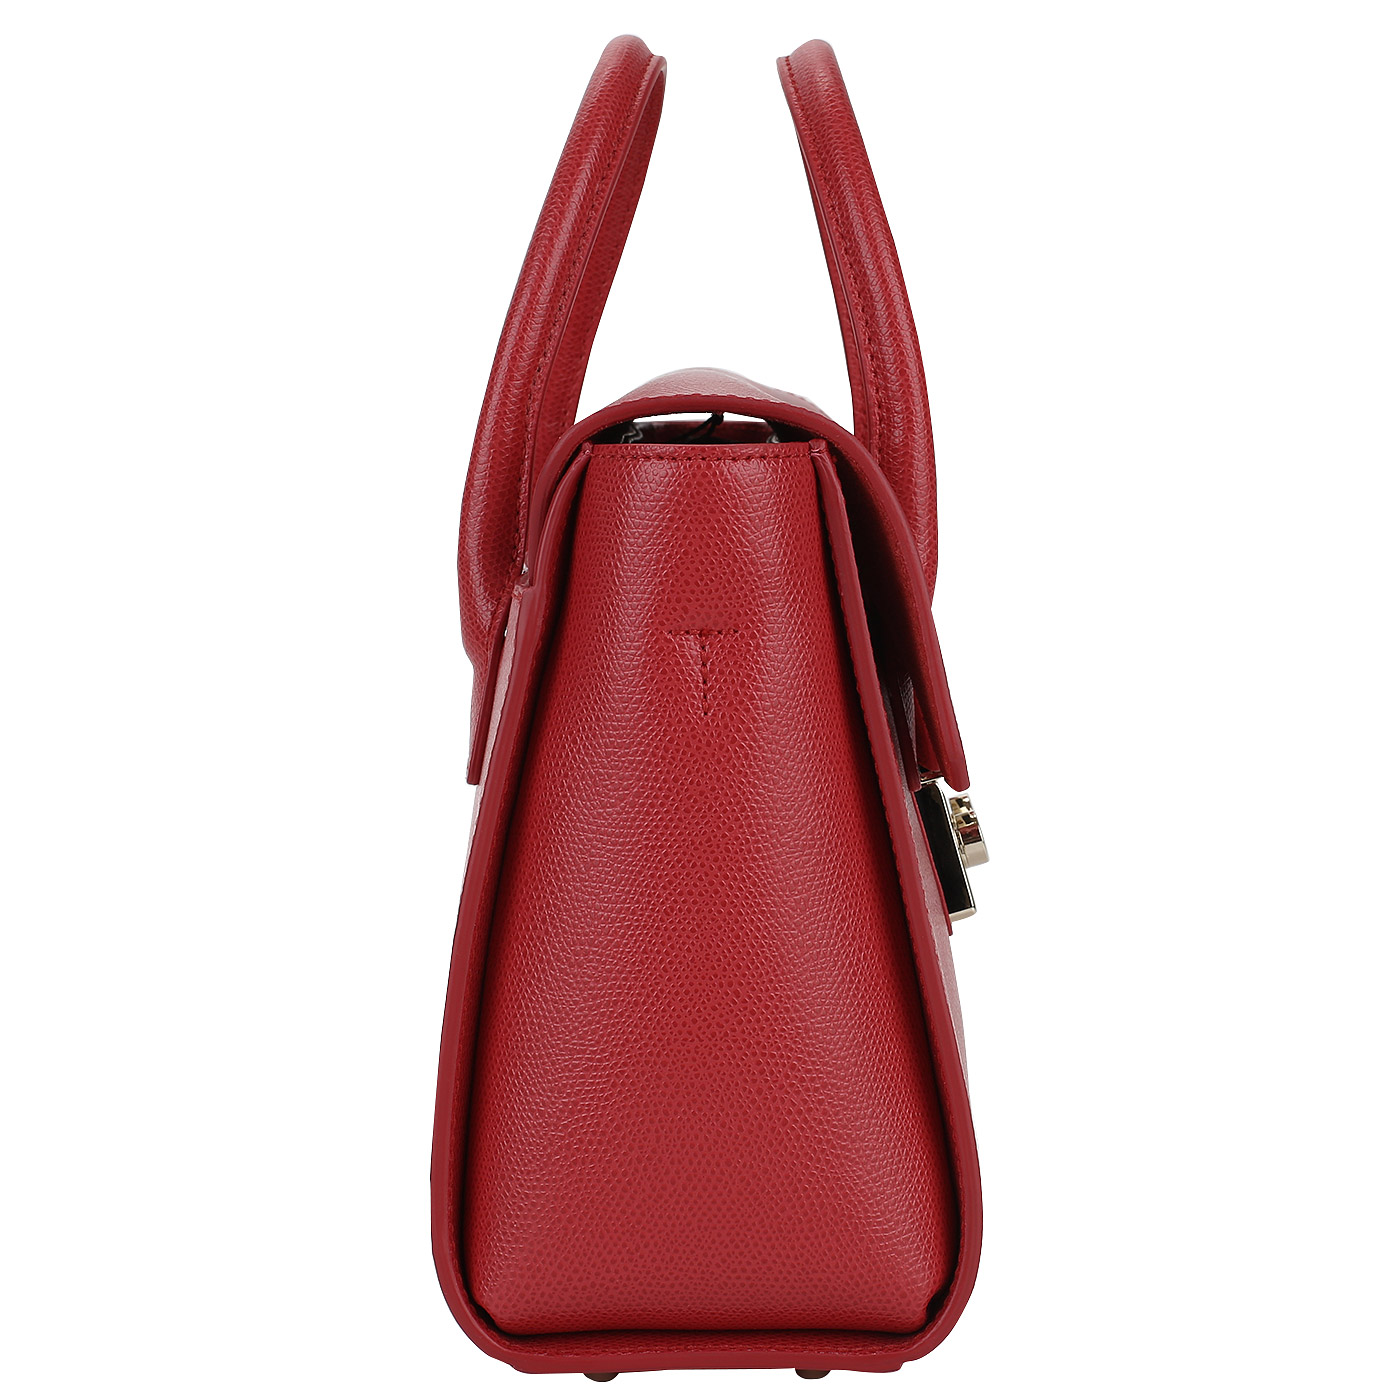 Красная кожаная сумочка с откидным клапаном Furla Metropolis